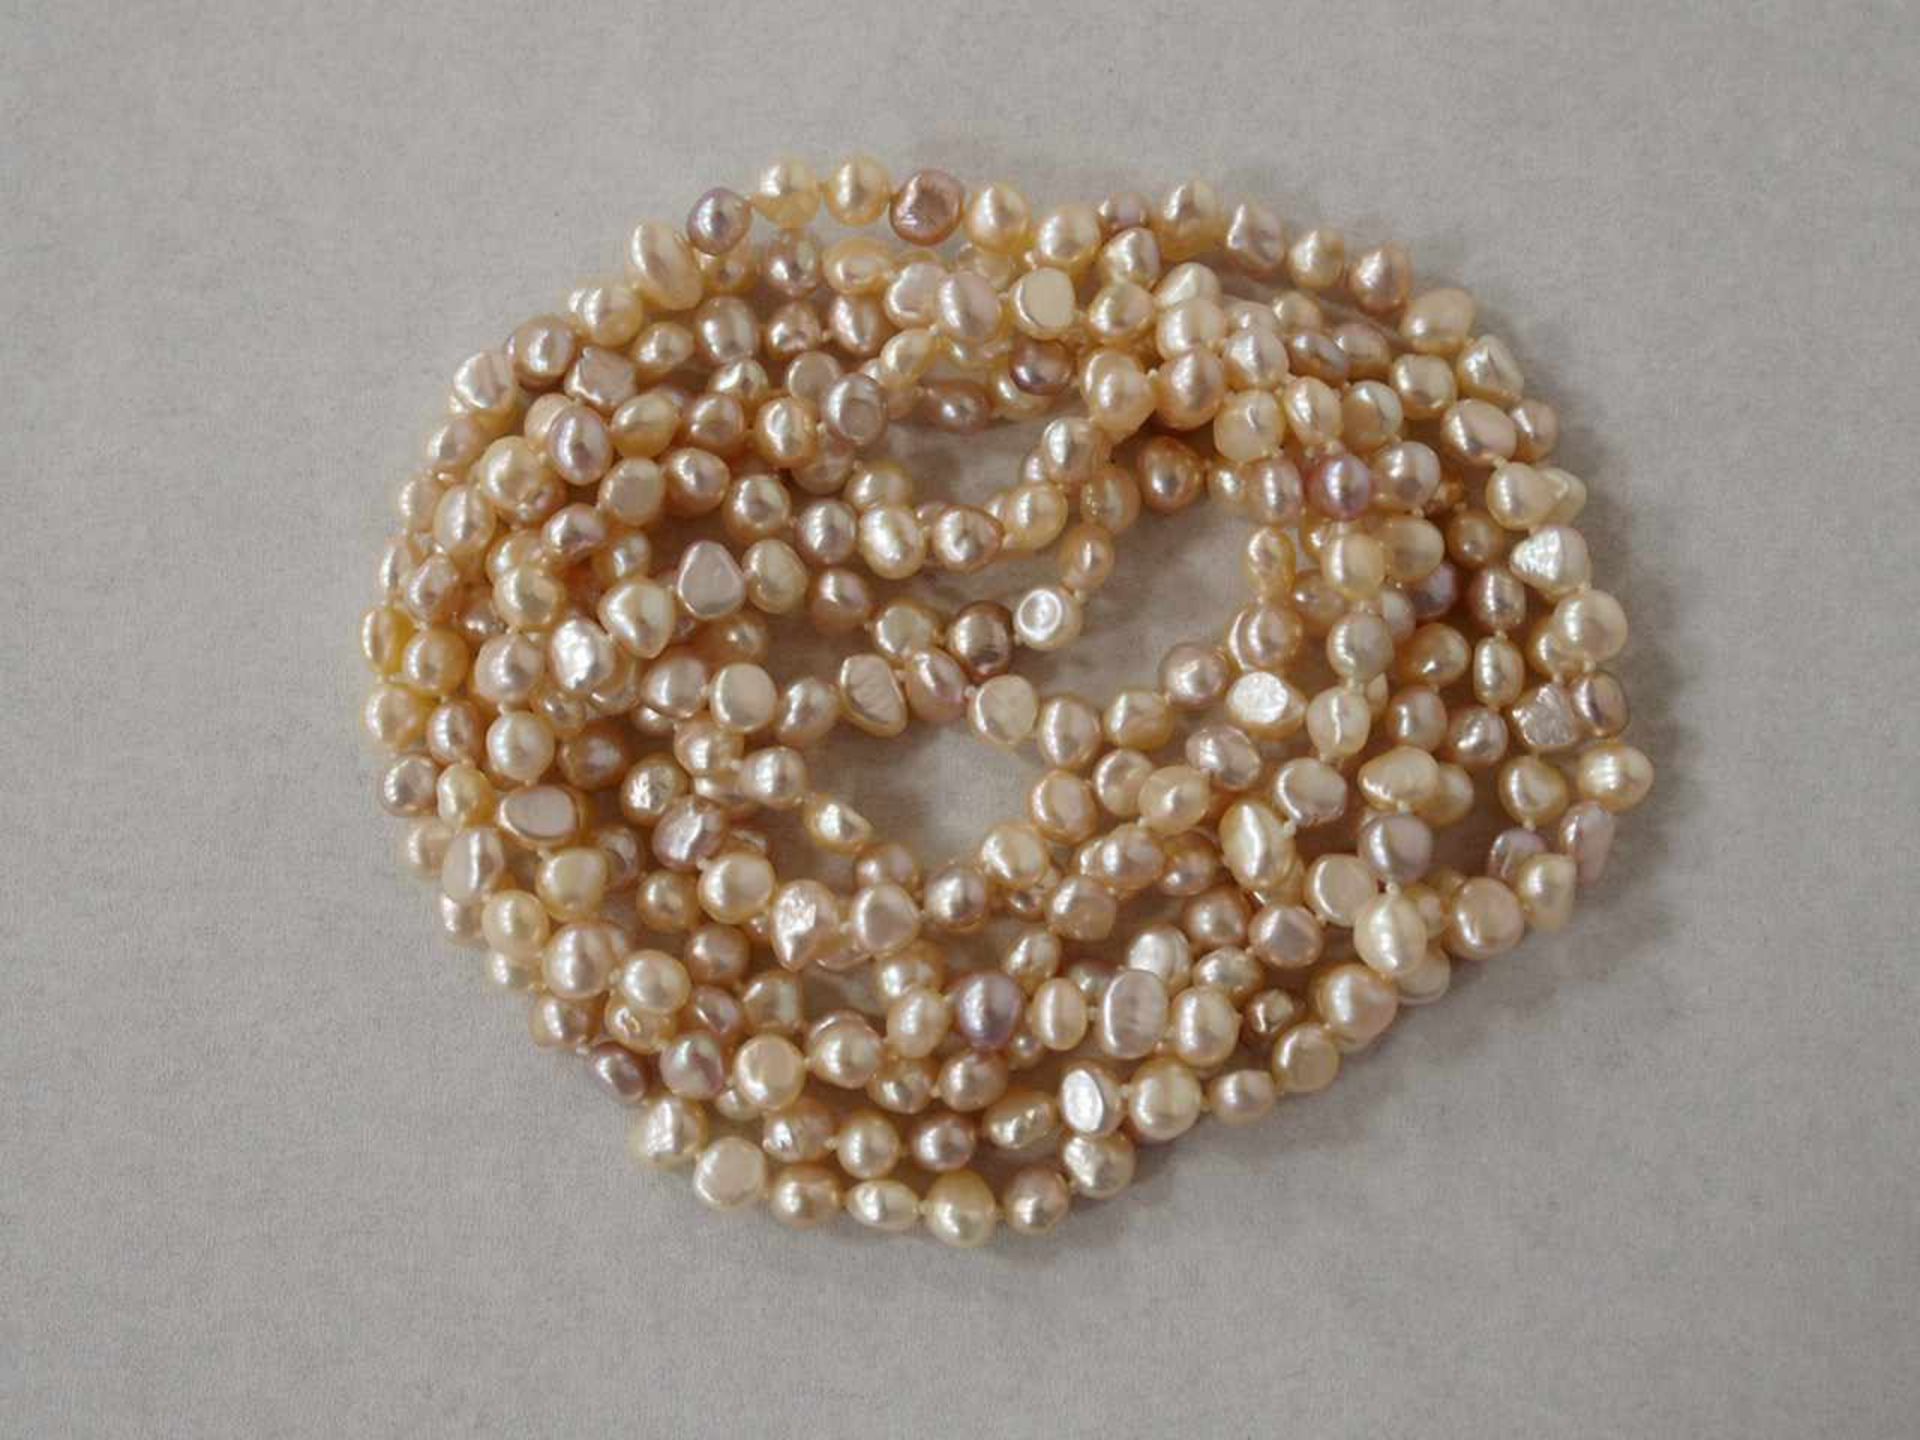 Perlenkette als mehrreihiges CollierLänge 102 (204) cm- - -25.00 % buyer's premium on the hammer